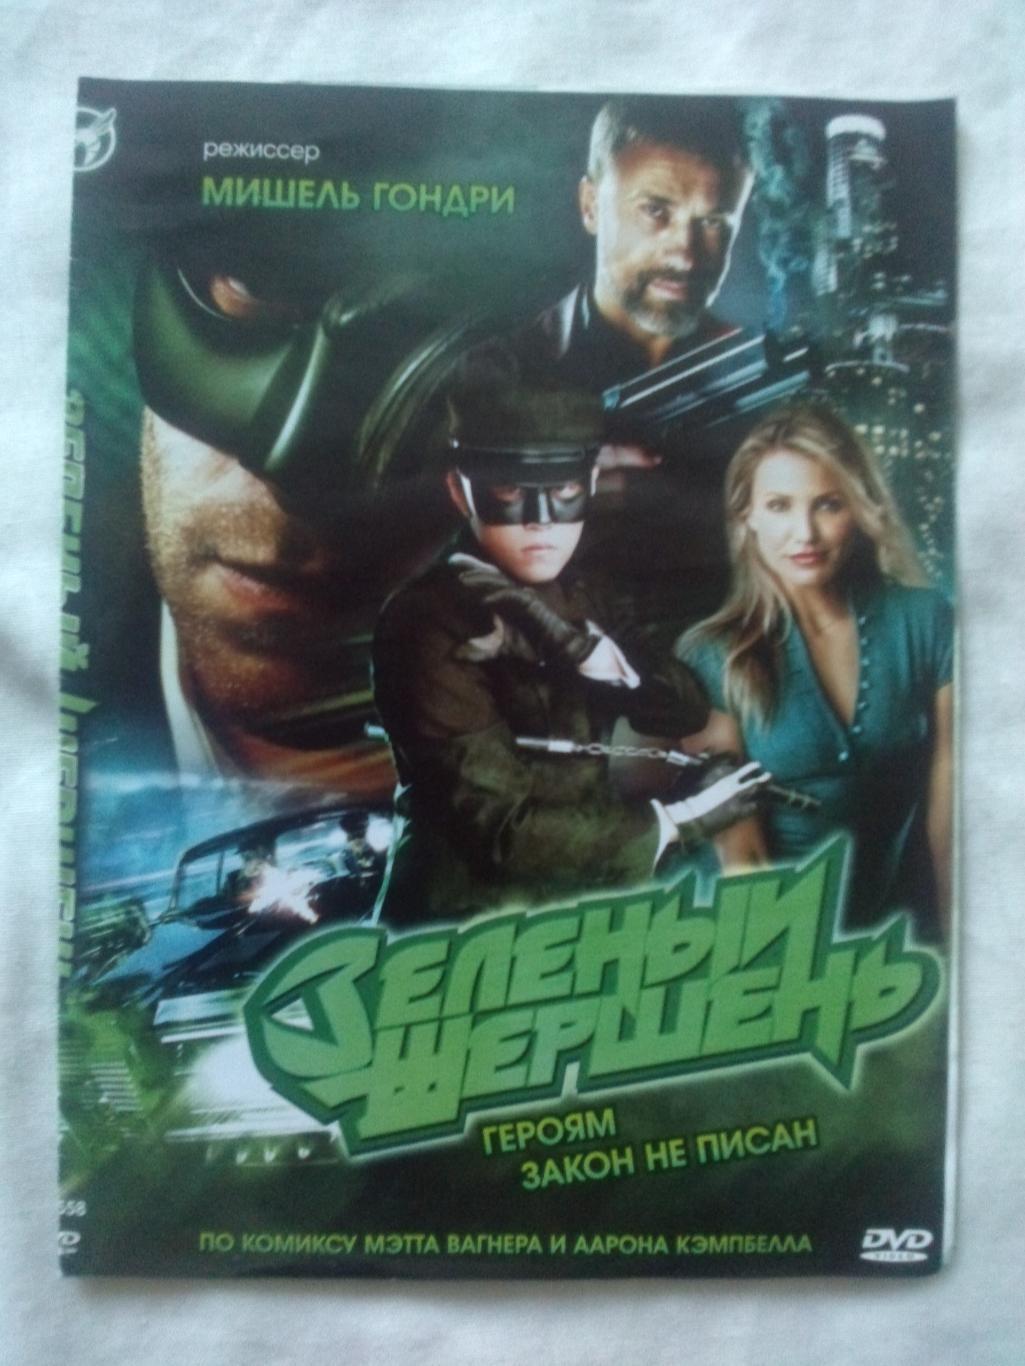 DVD Зеленый шершень (боевик по мотивам комиксов) 2011 г. лицензия (новый)